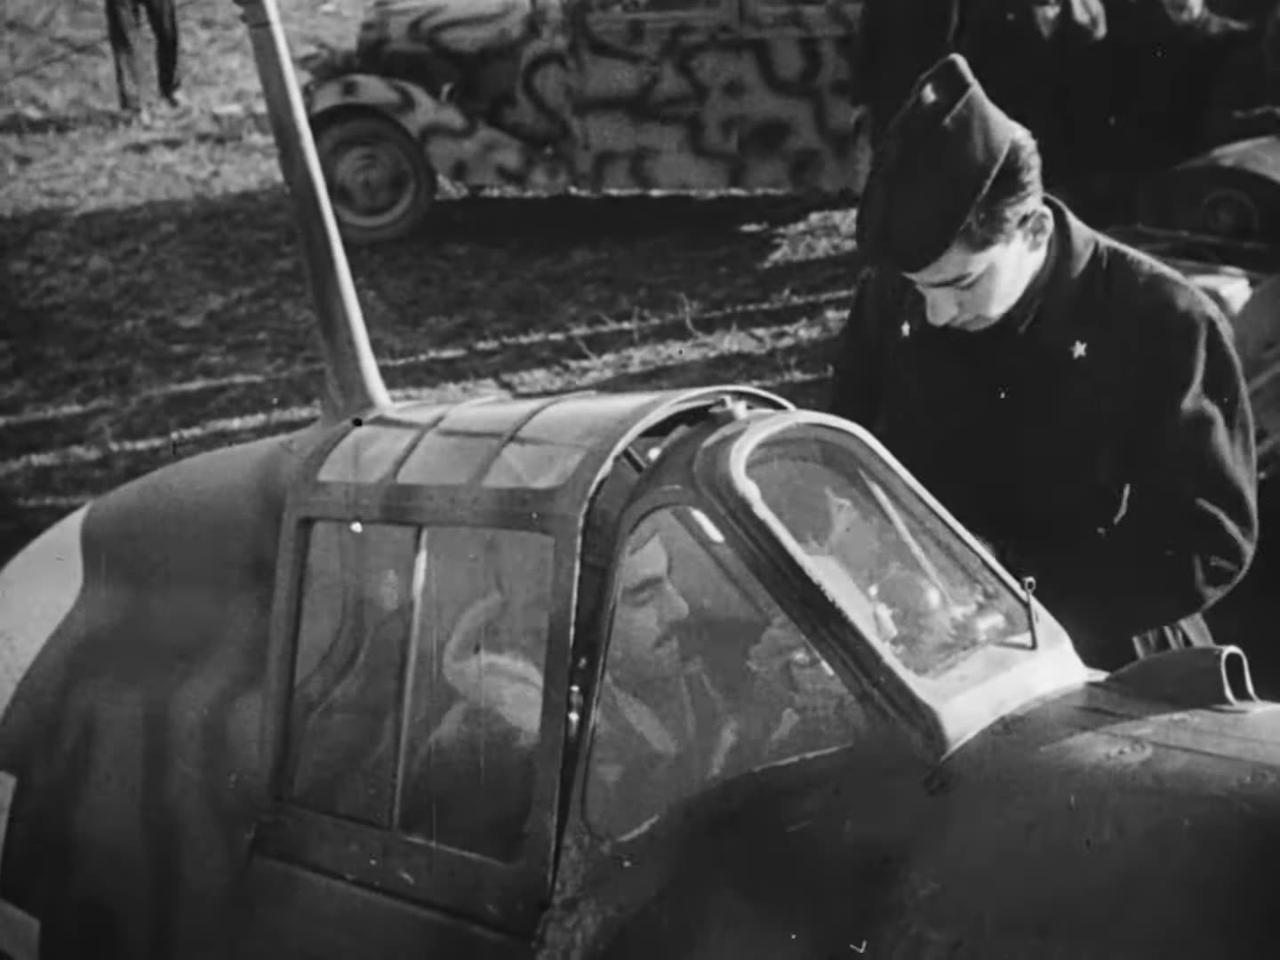 Macchi C.205 pilots of the Aeronautica Nazionale Repubblicana with Luftwaffe counterparts in 1944